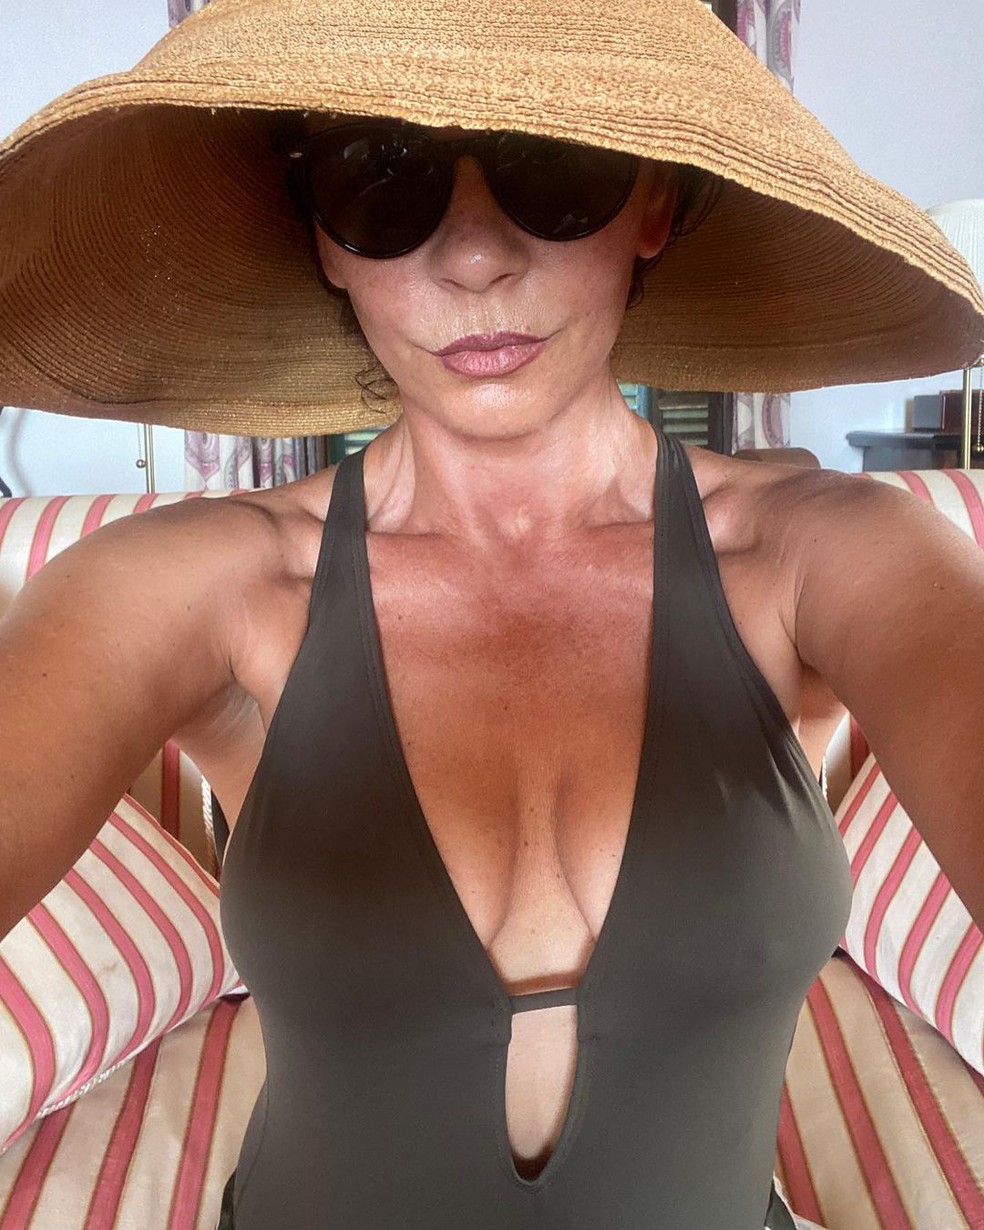 Catherine Zeta-Jones compartilha cliques de maiô com recorte frontal e ganha elogios — Foto: Reprodução / Instagram